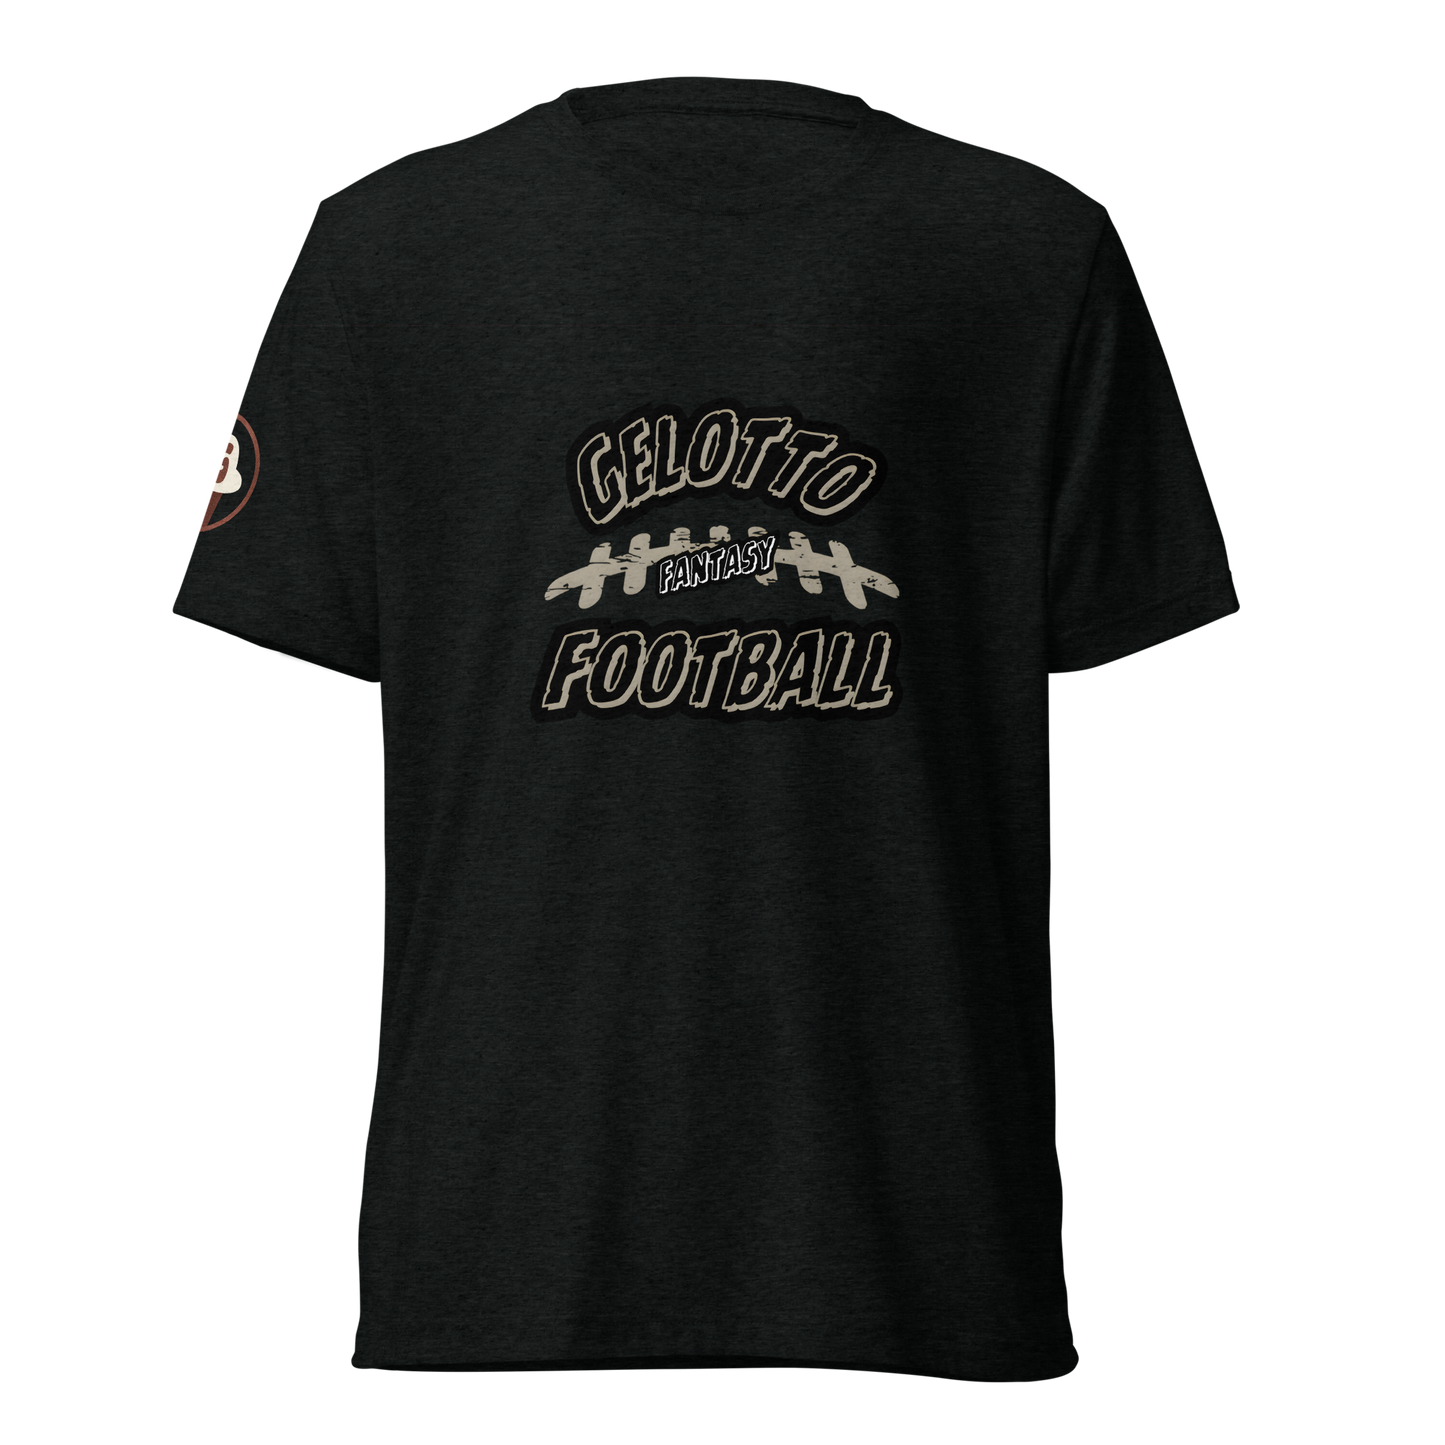 Super Soft Fantasy Football Short sleeve t-shirt